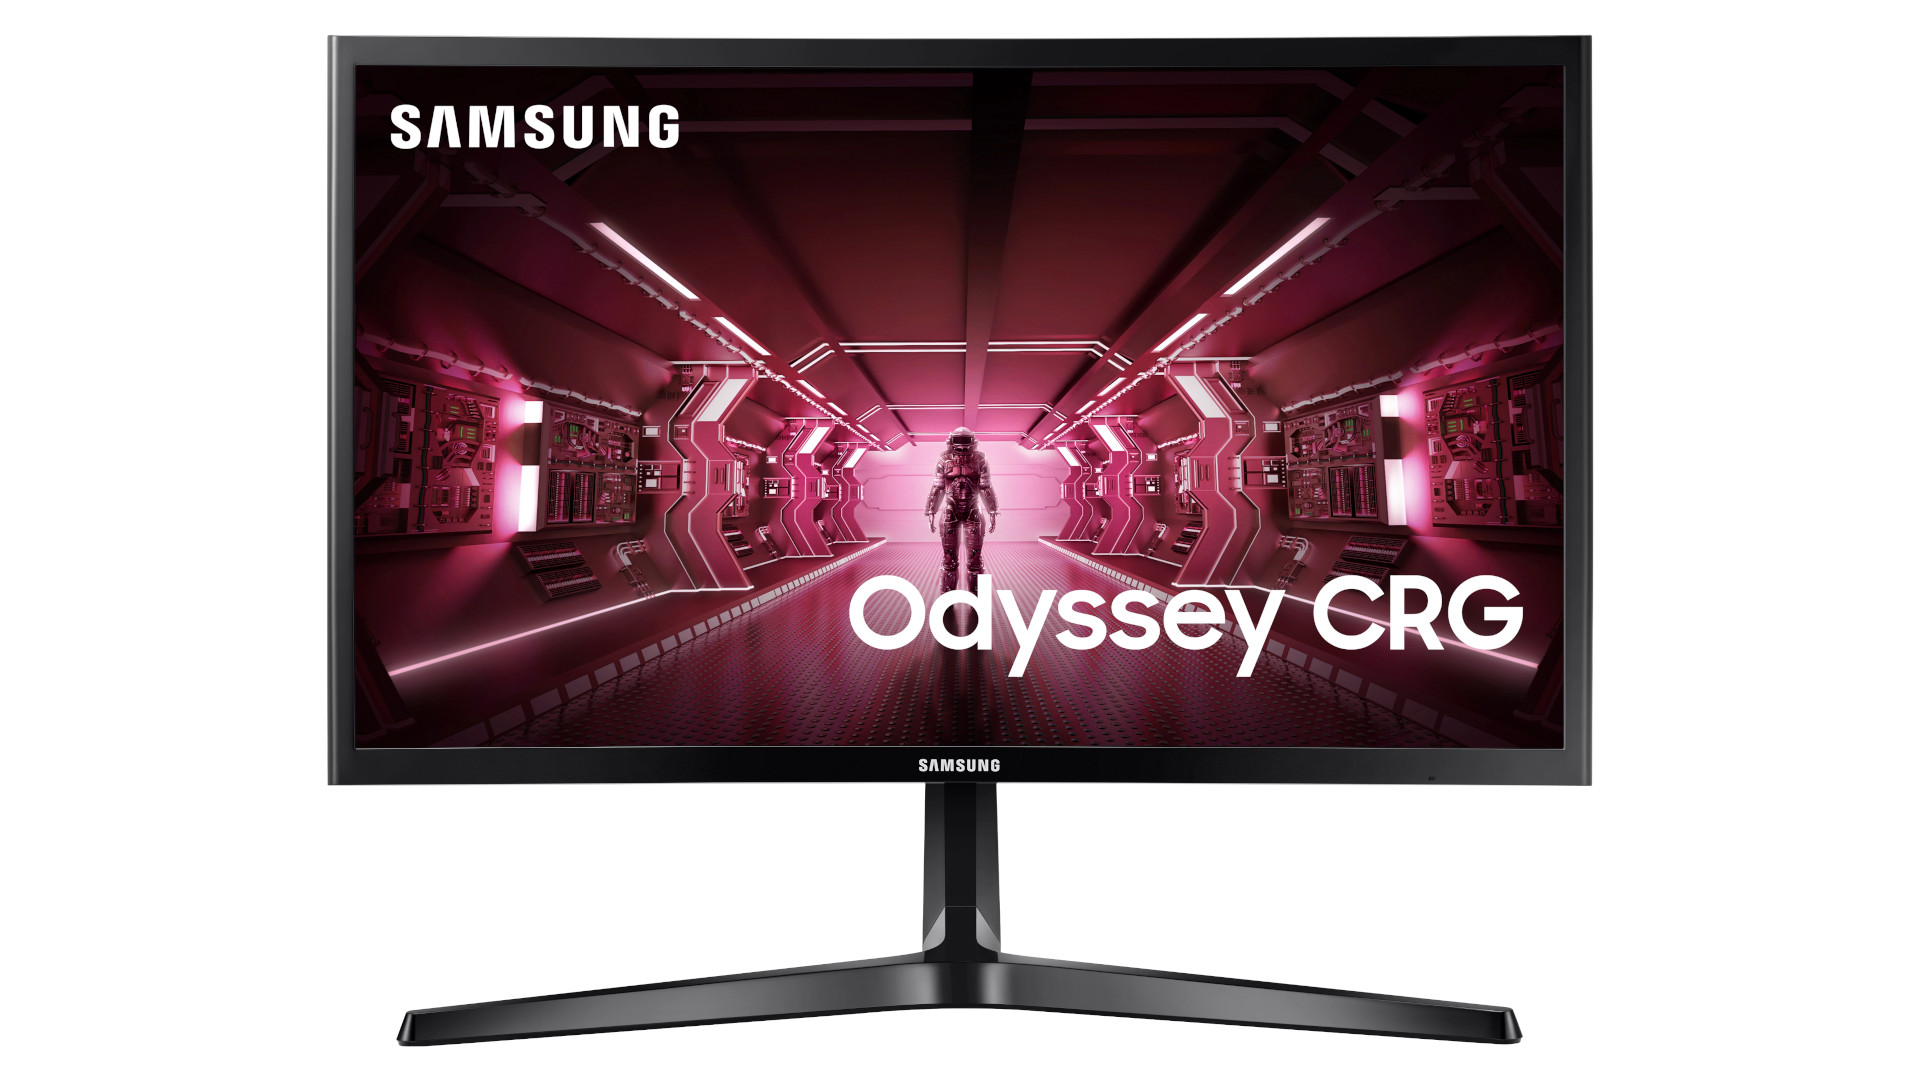 Samsung CRG5 1080p 144Hz घुमाउरो गेमिङ मनिटर Amazon मा 46% छुट छ